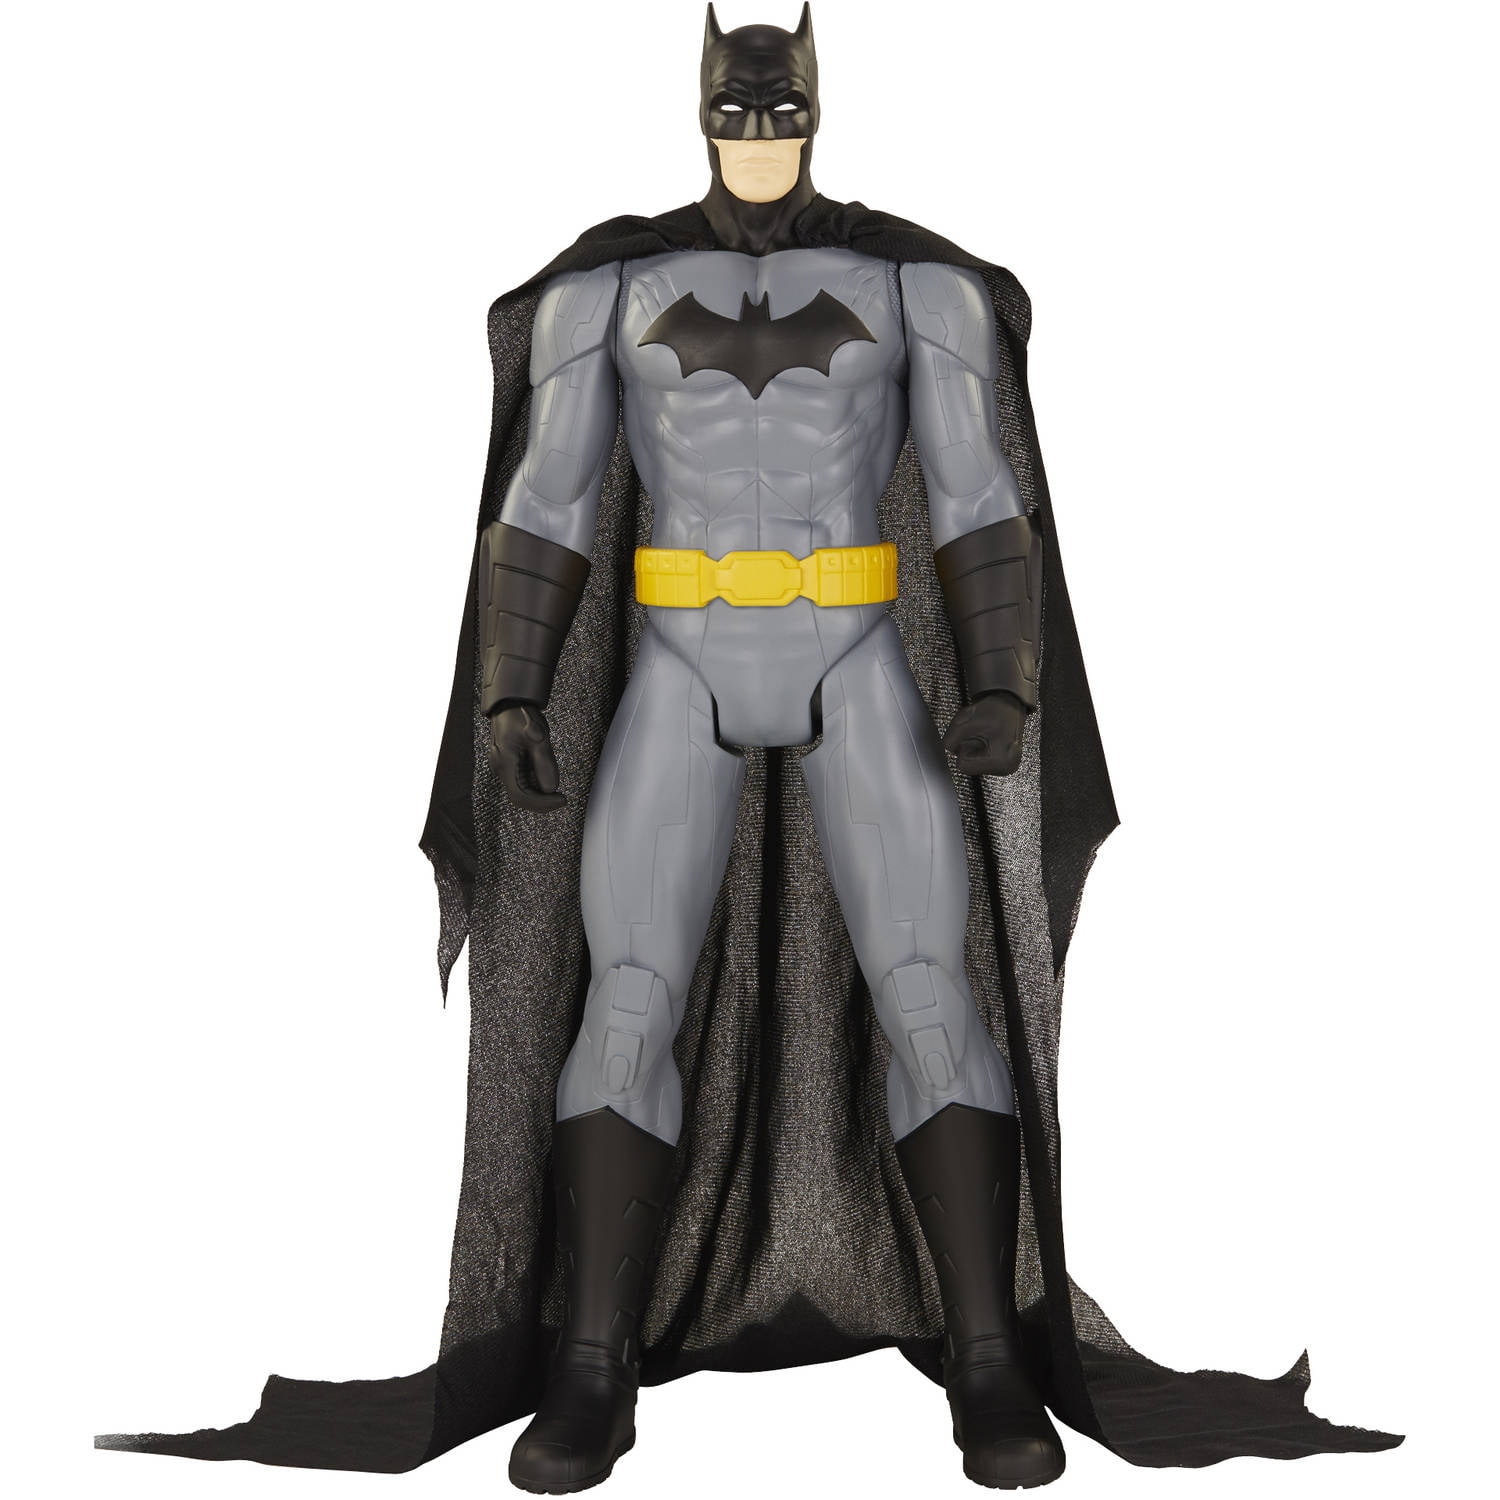 batman 31 inch action figure